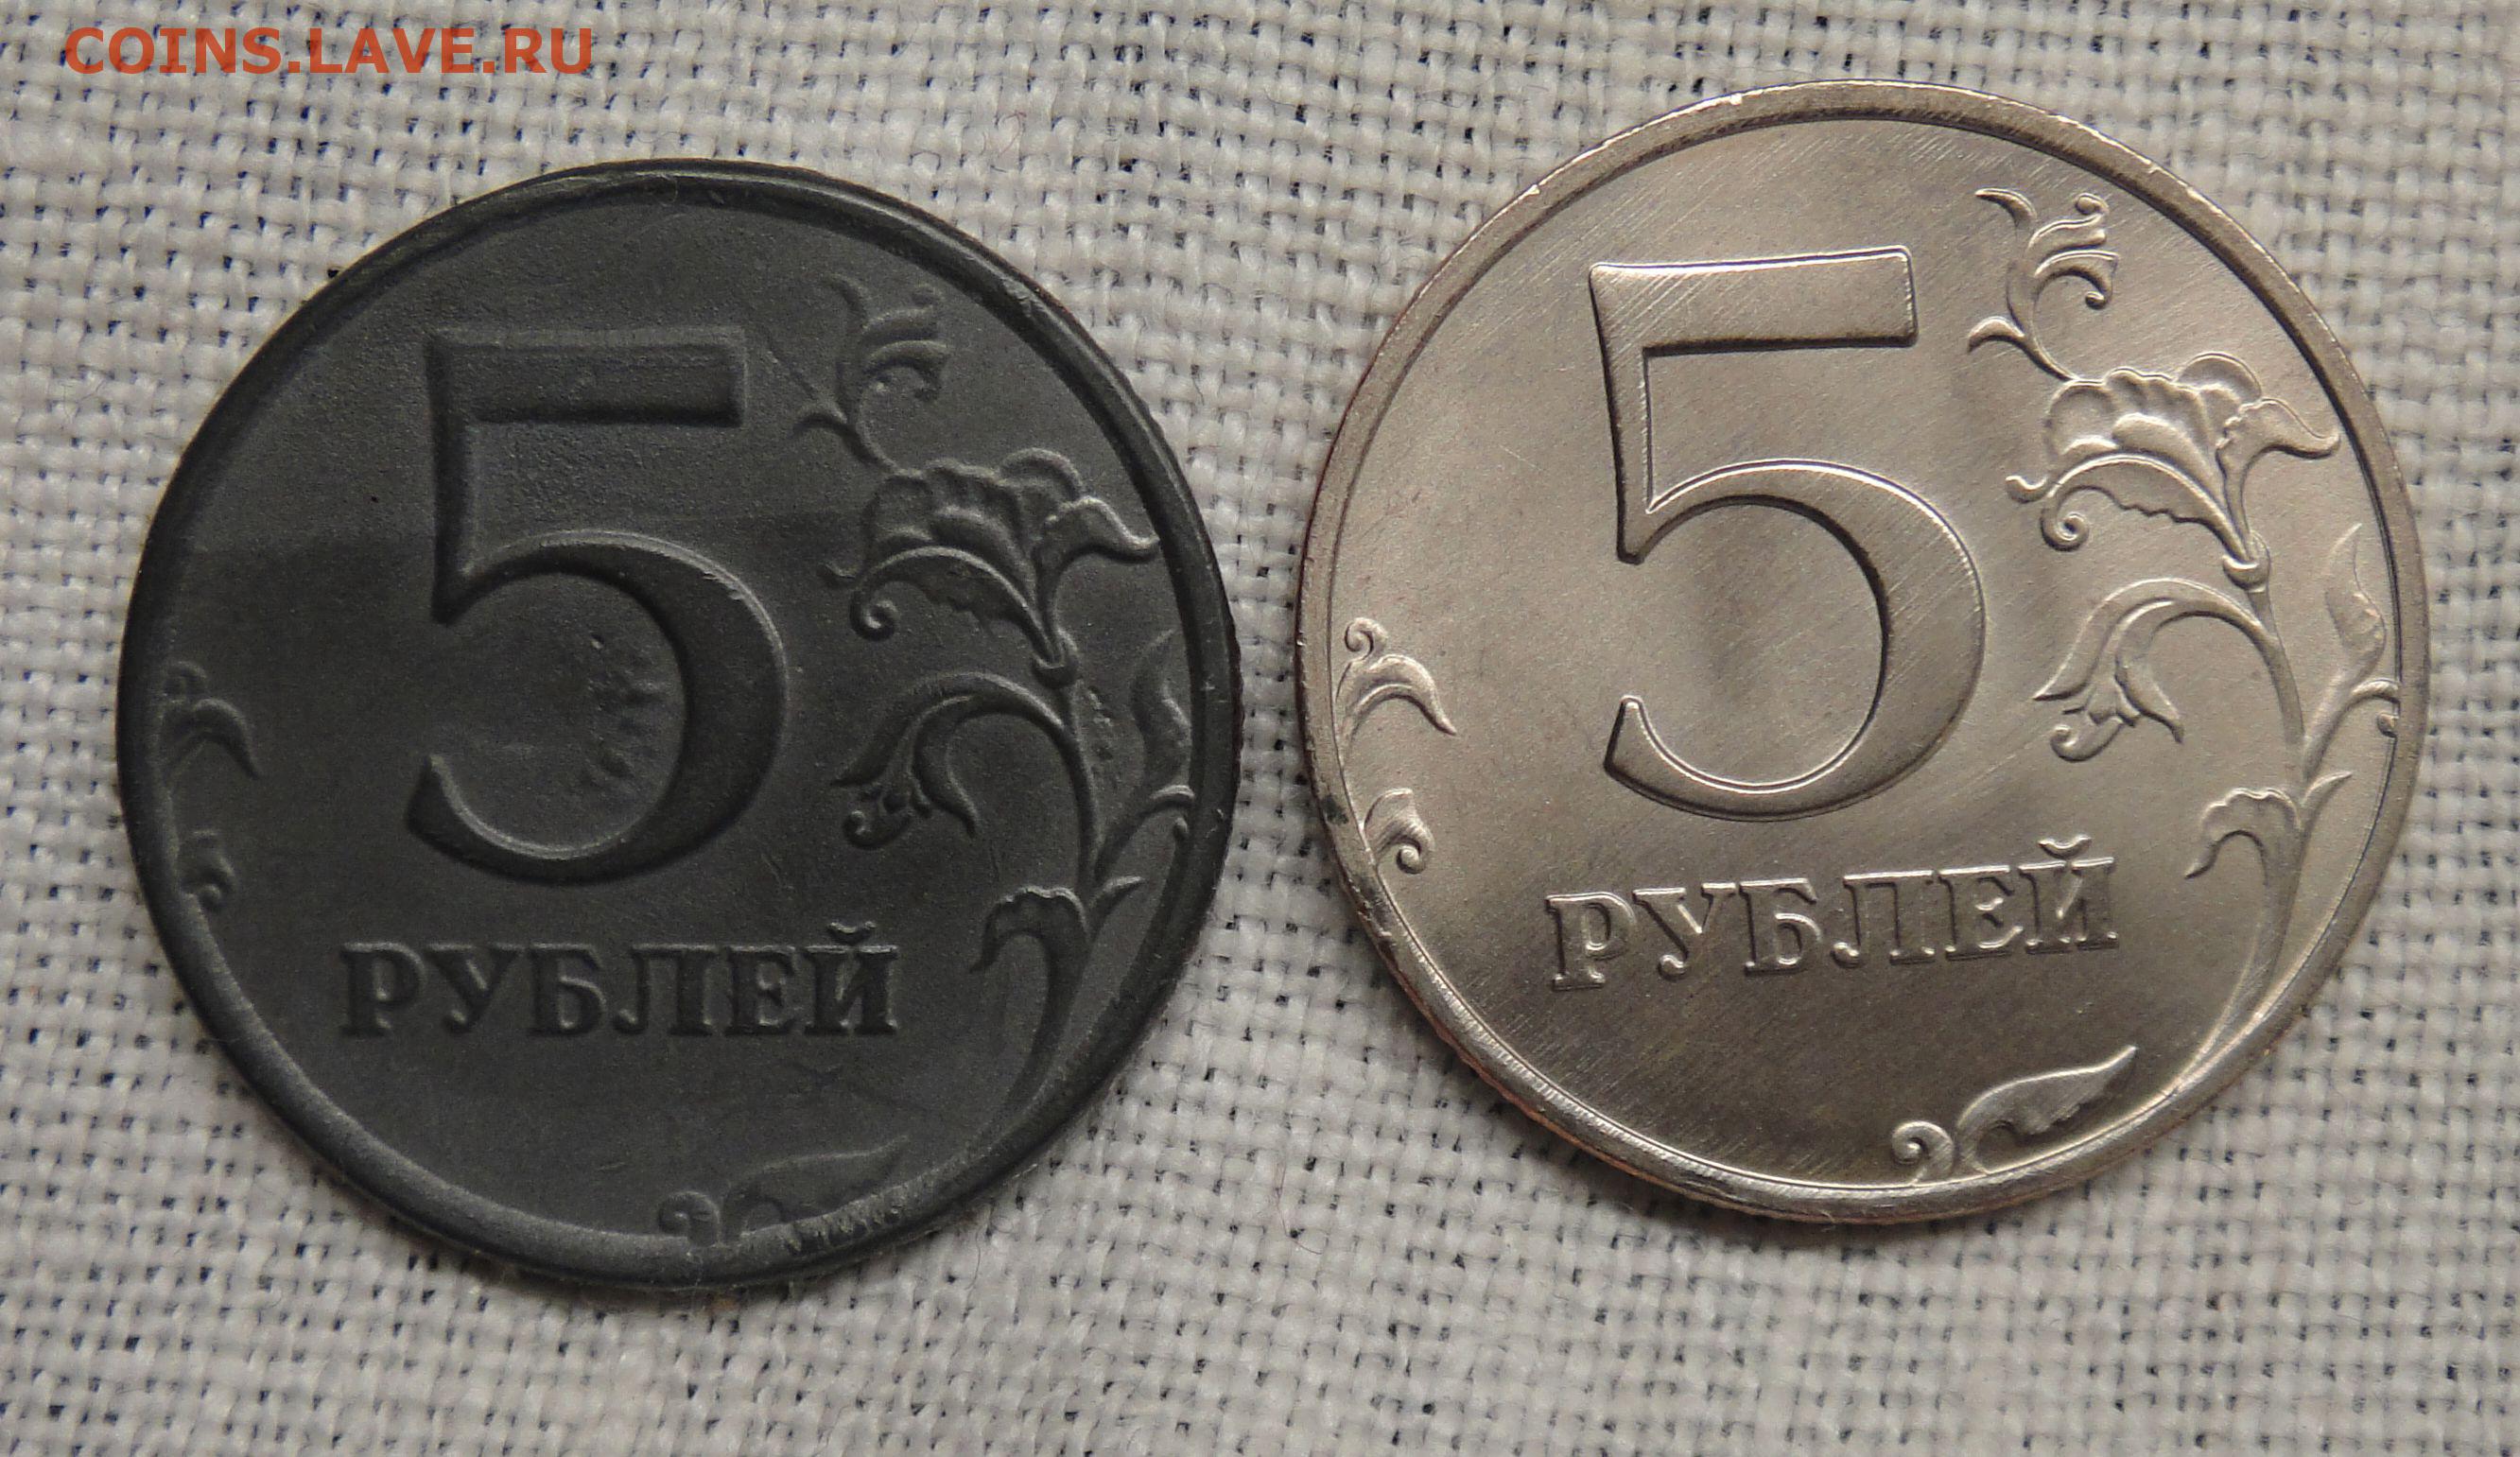 38 5 в рублях. Фальшивые 5 рублей. 5 Рублей 1997. 5 Руб 1997. Пять рублей 1997 метало.